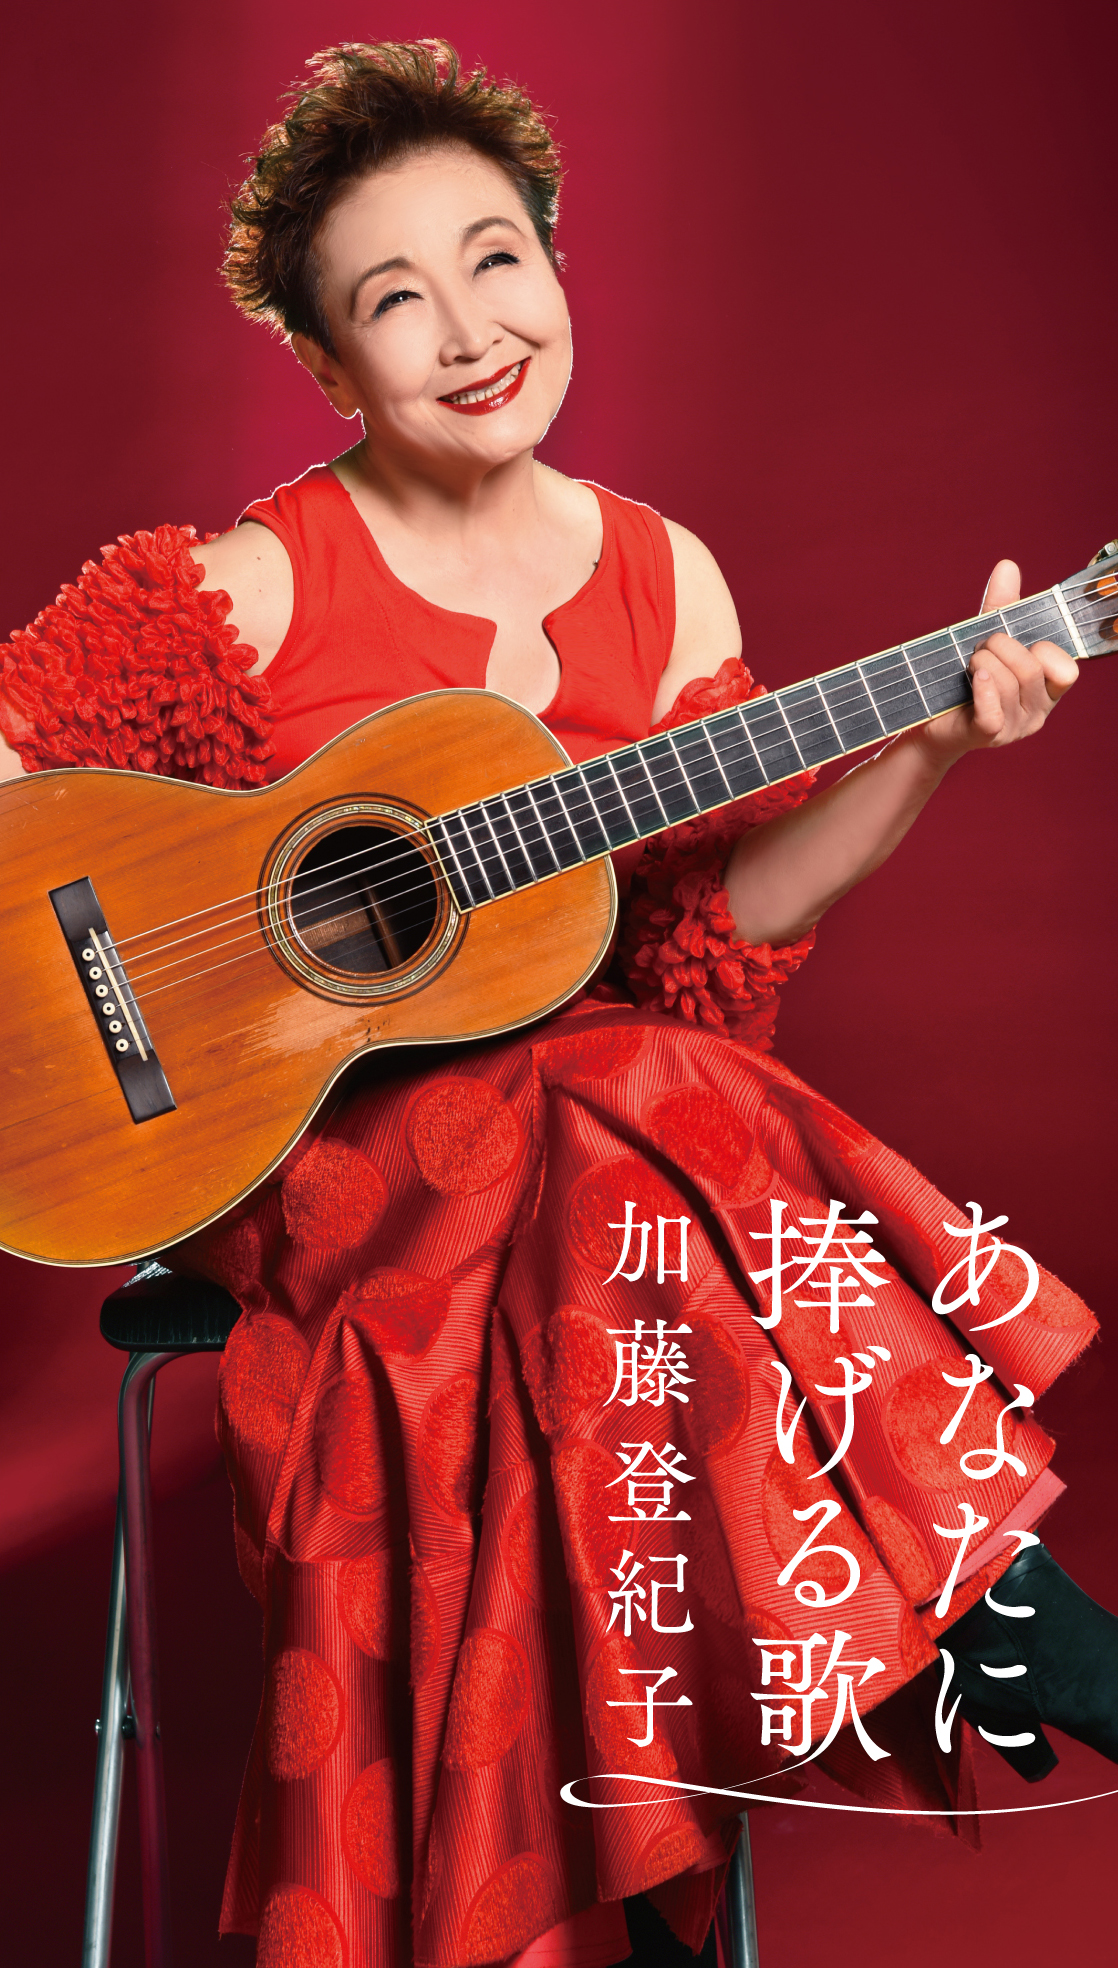 歌手生活55周年・加藤登紀子の6枚組ベストアルバム「あなたに捧げる歌